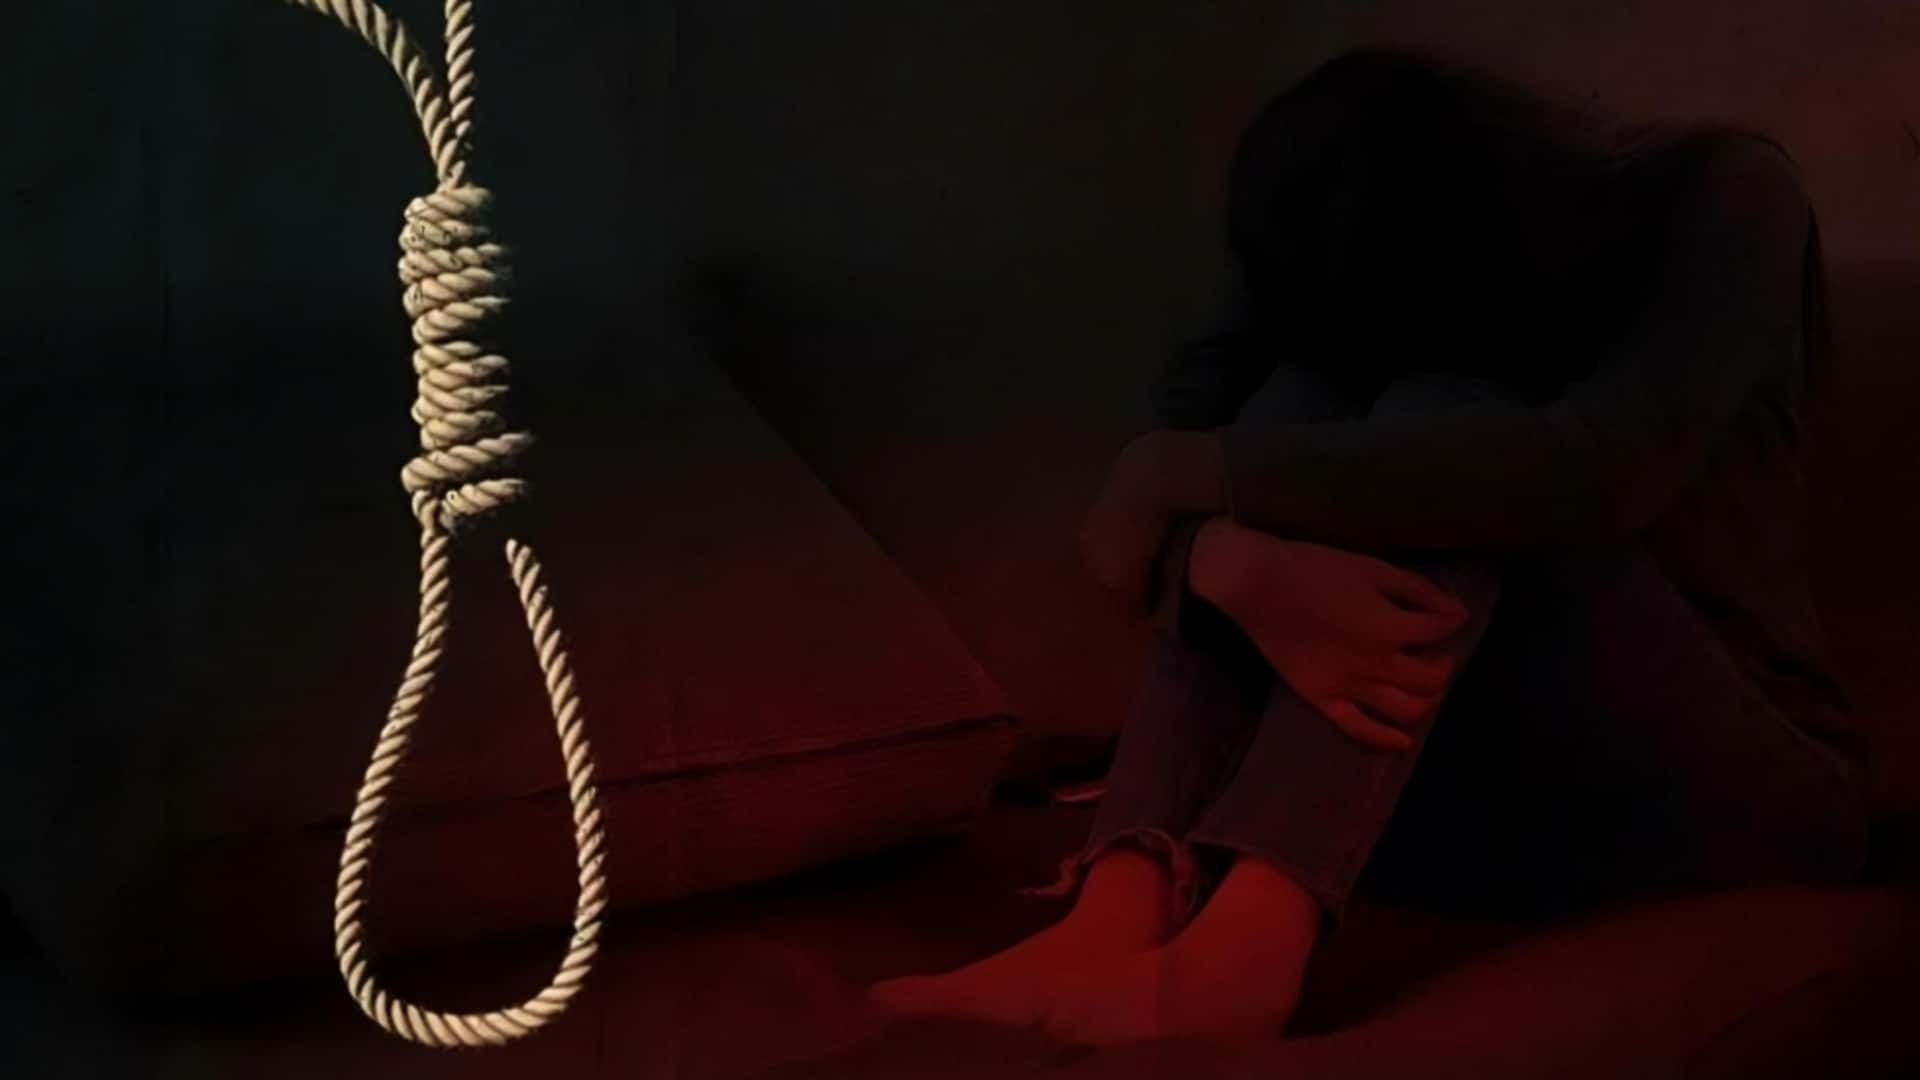 उत्तर प्रदेश: नौकरी जाने के बाद लखनऊ लौटे युवक ने की आत्महत्या